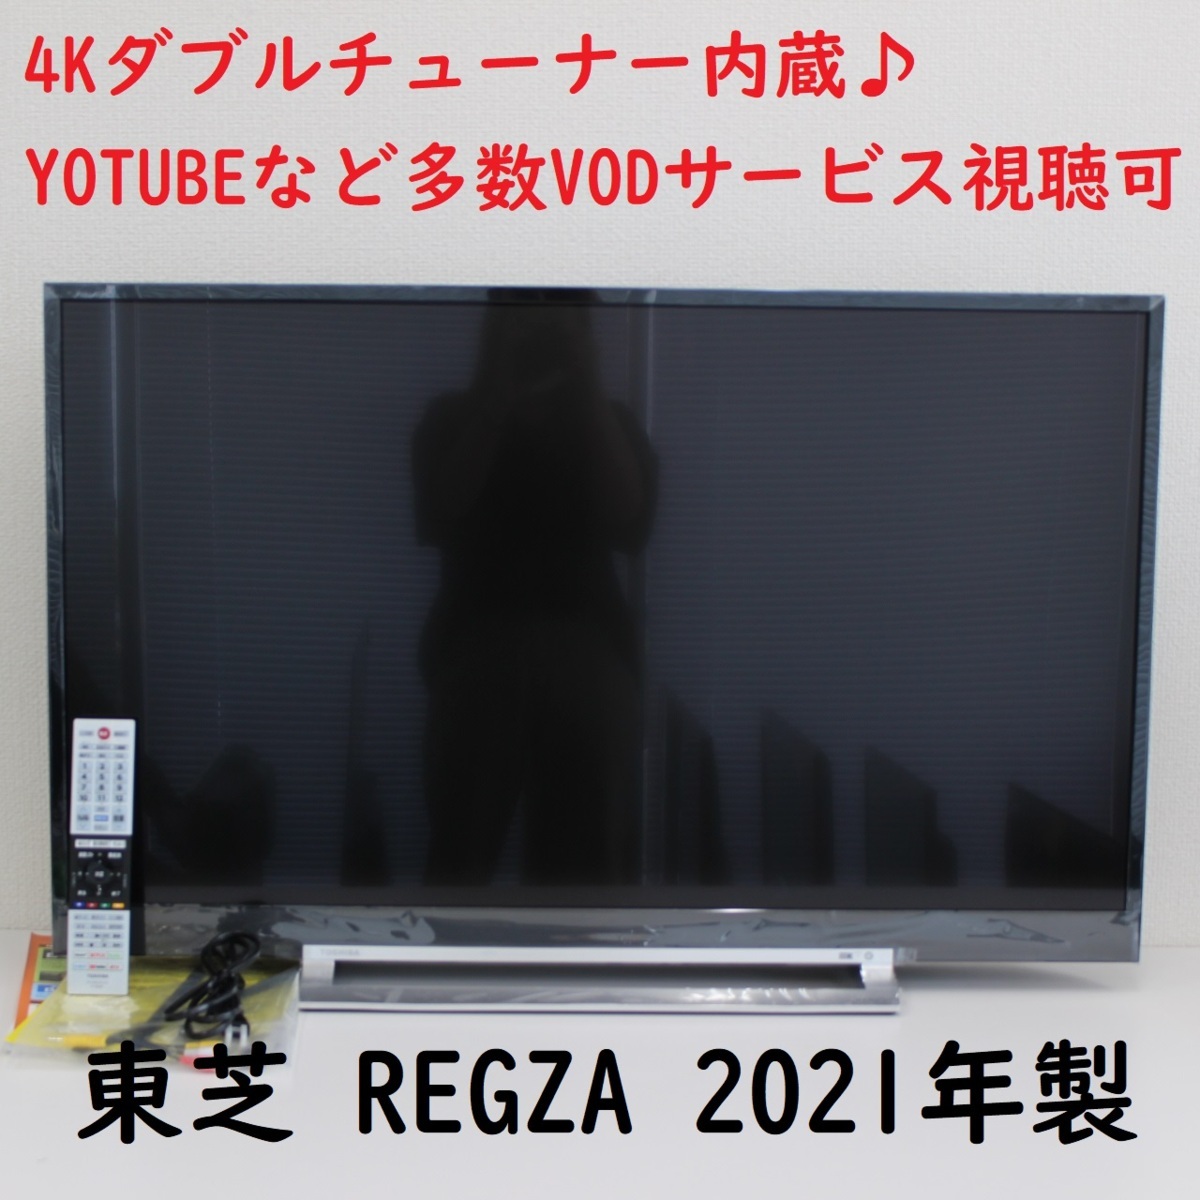 東京都渋谷区にて 東芝 液晶テレビ 43Z730X 2021年製 を出張買取させて頂きました。